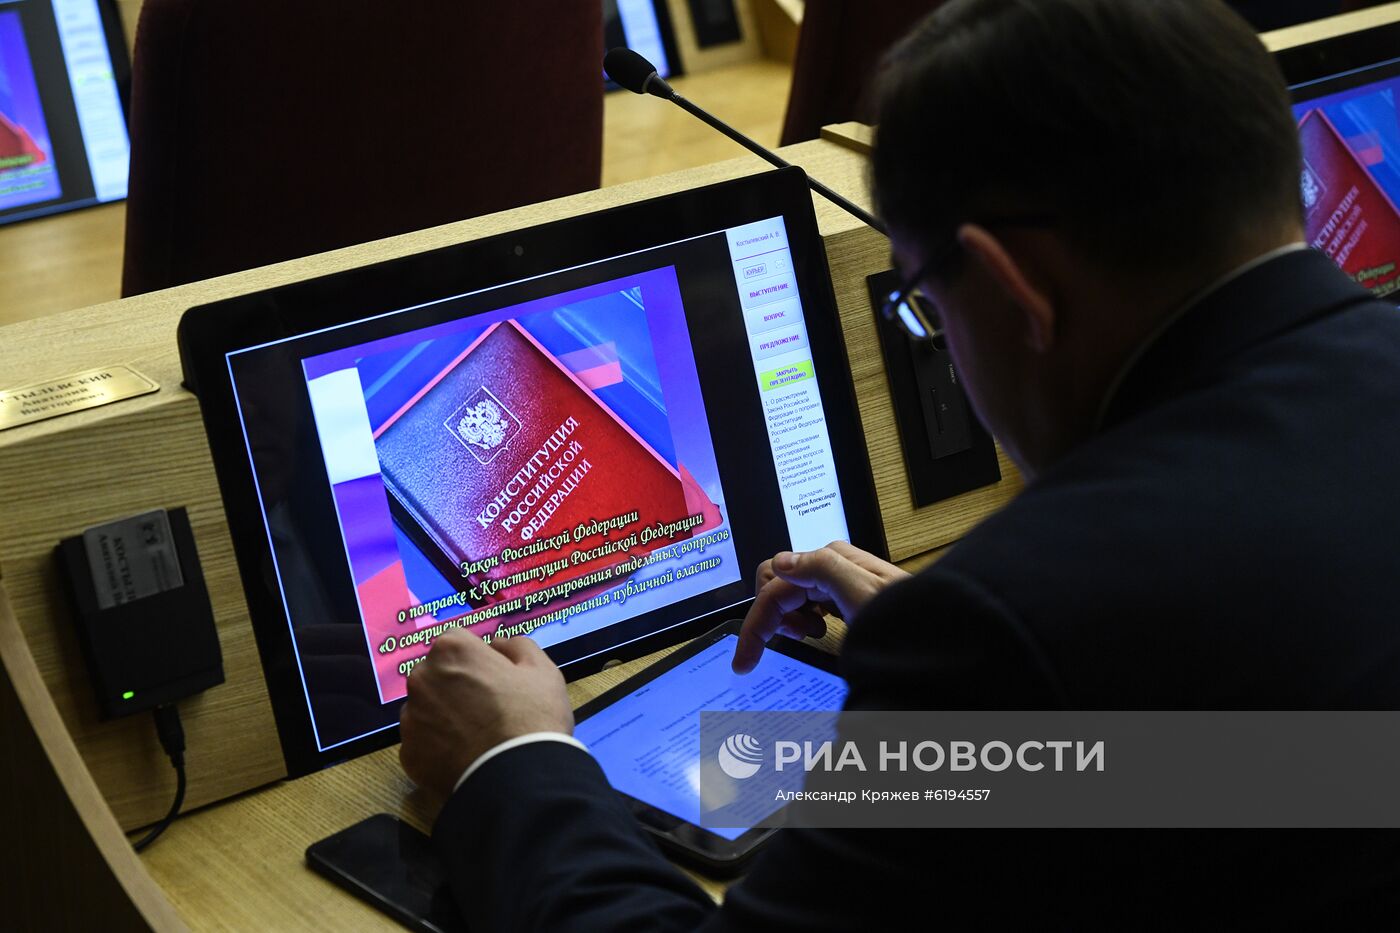 Голосование по поправкам к Конституции в Заксобрании Новосибирской области